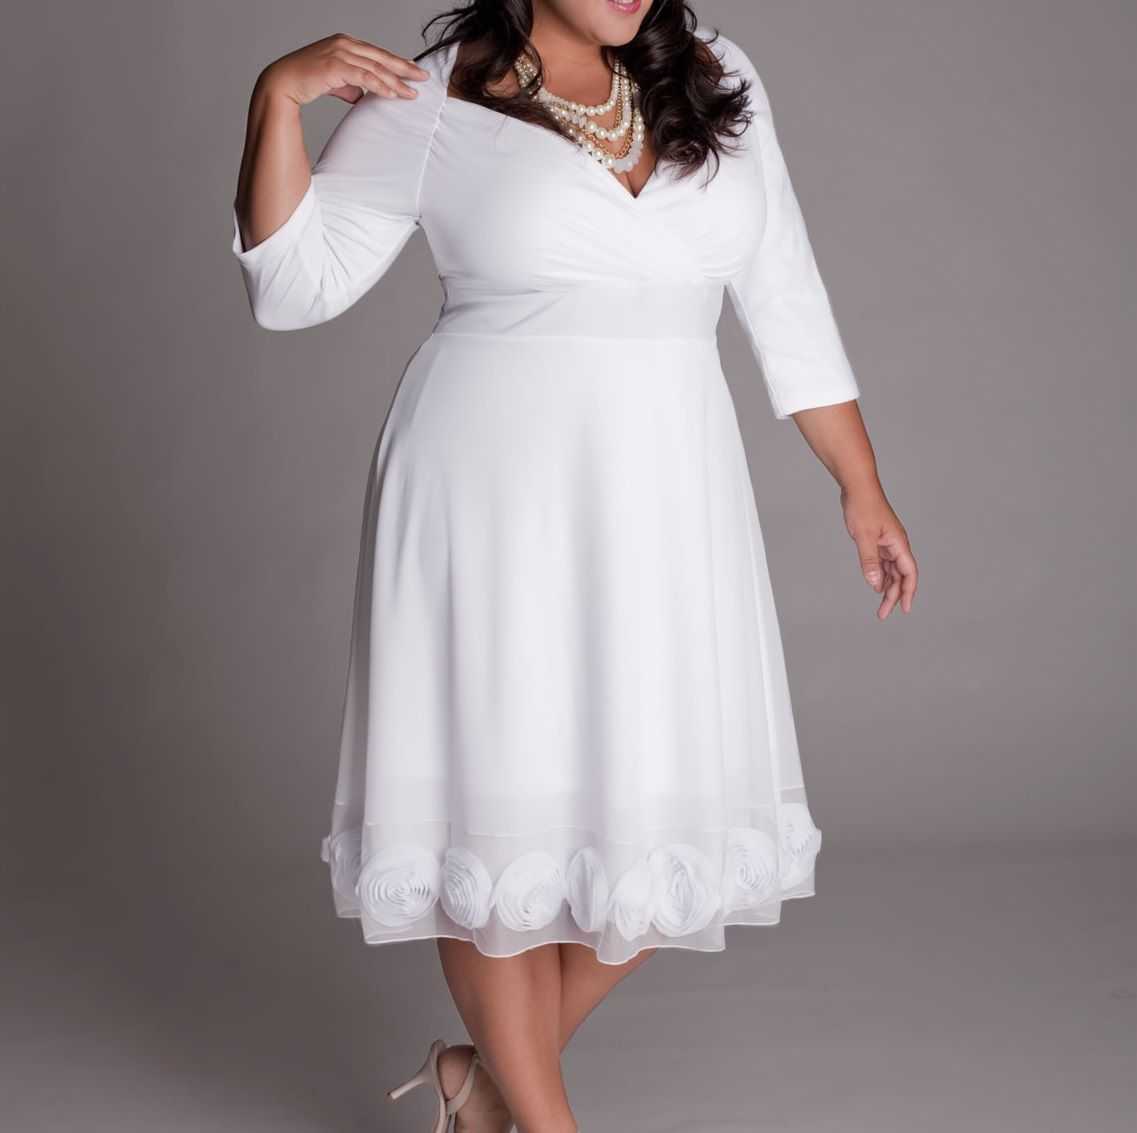 Белые платья больших размеров. Свадебные платья плюс сайз 56-58 размер. Свадебные платья плюс сайз короткие. Белое платье для полных девушек. Короткие Свадебные платья для полных девушек.